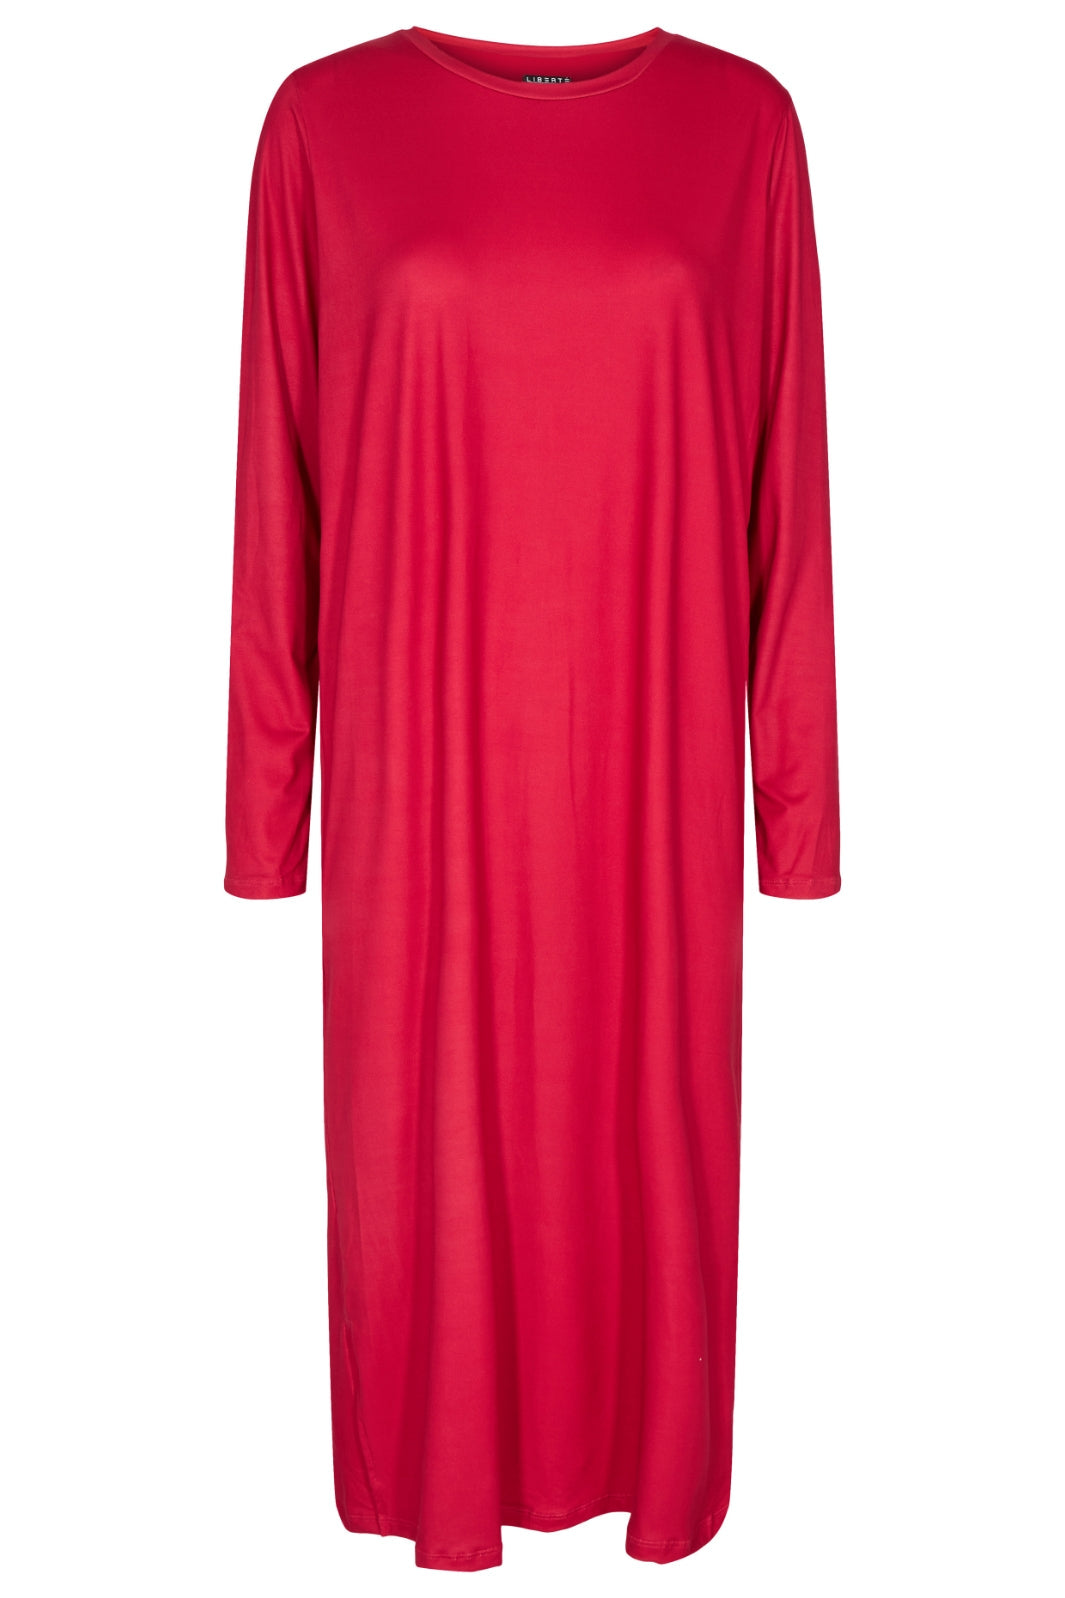 Forudbestilling - Liberte - Alma-Ls-Tshirt-Dress - Red (Oktober) Kjoler 